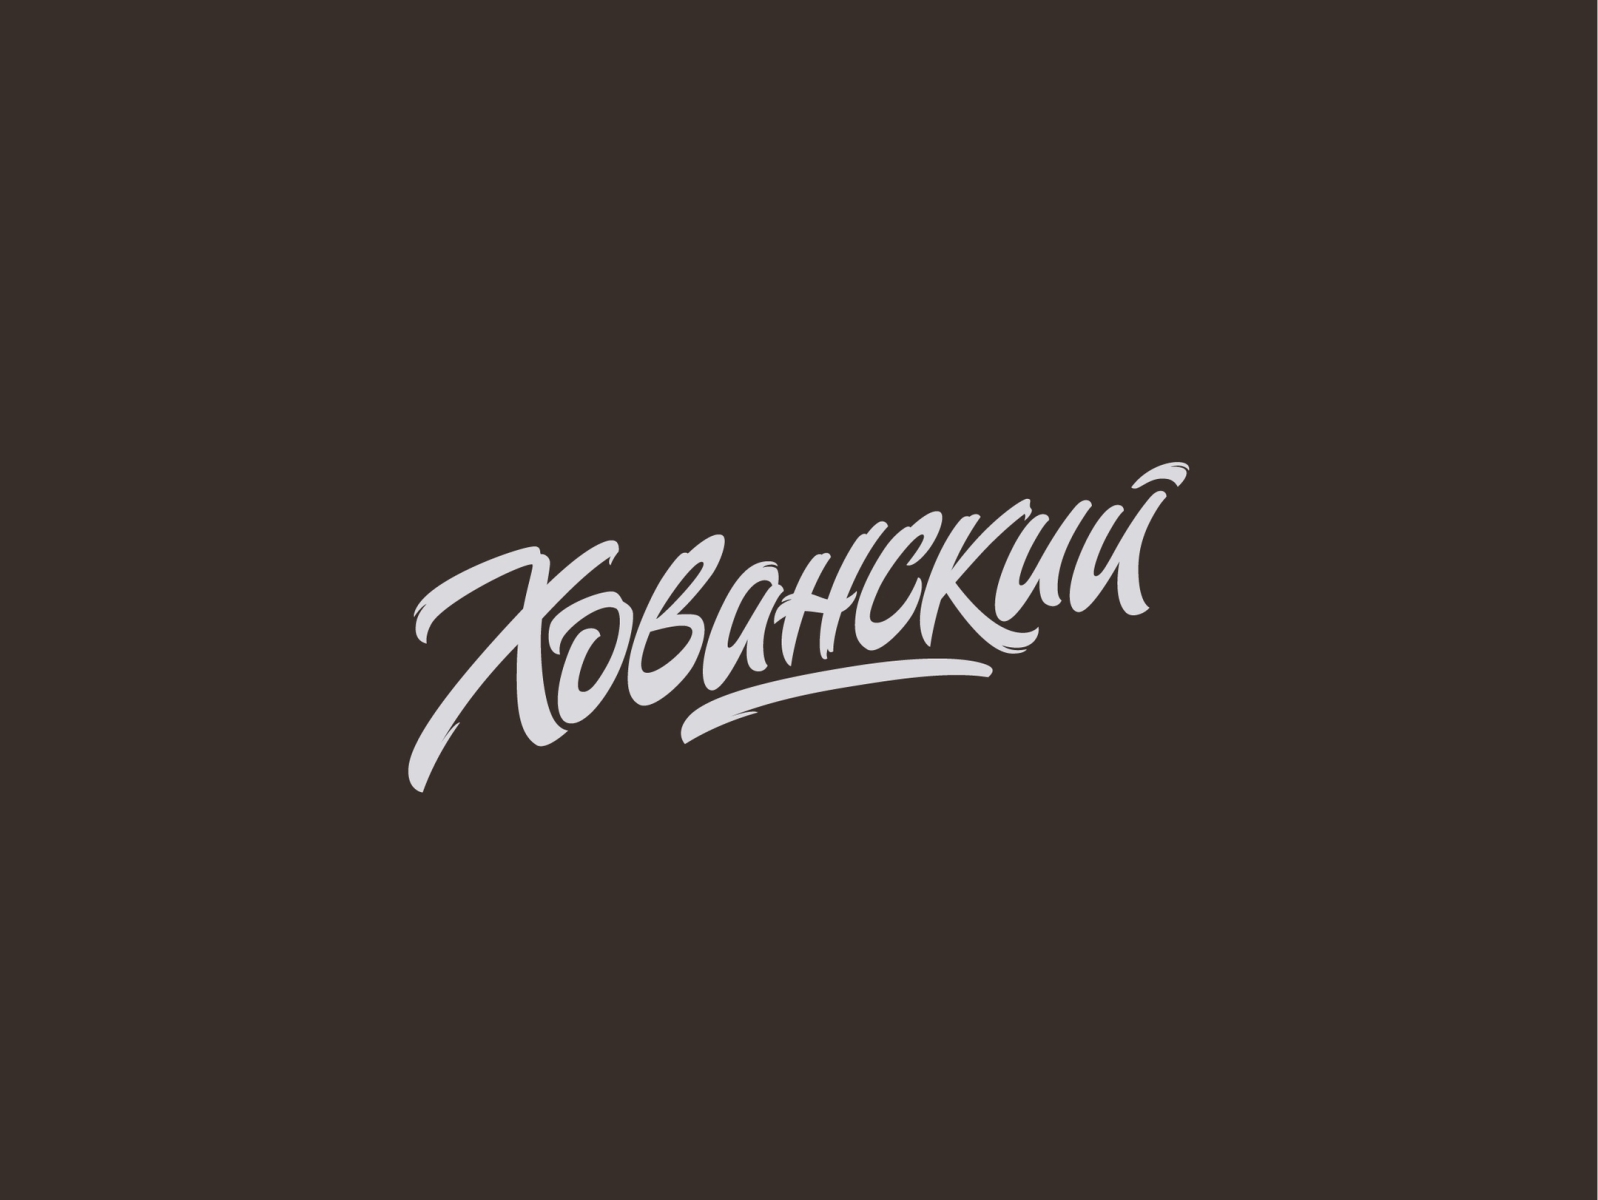 Khovansky - blogger lettering logo by Olga Koptyaeva on Dribbble